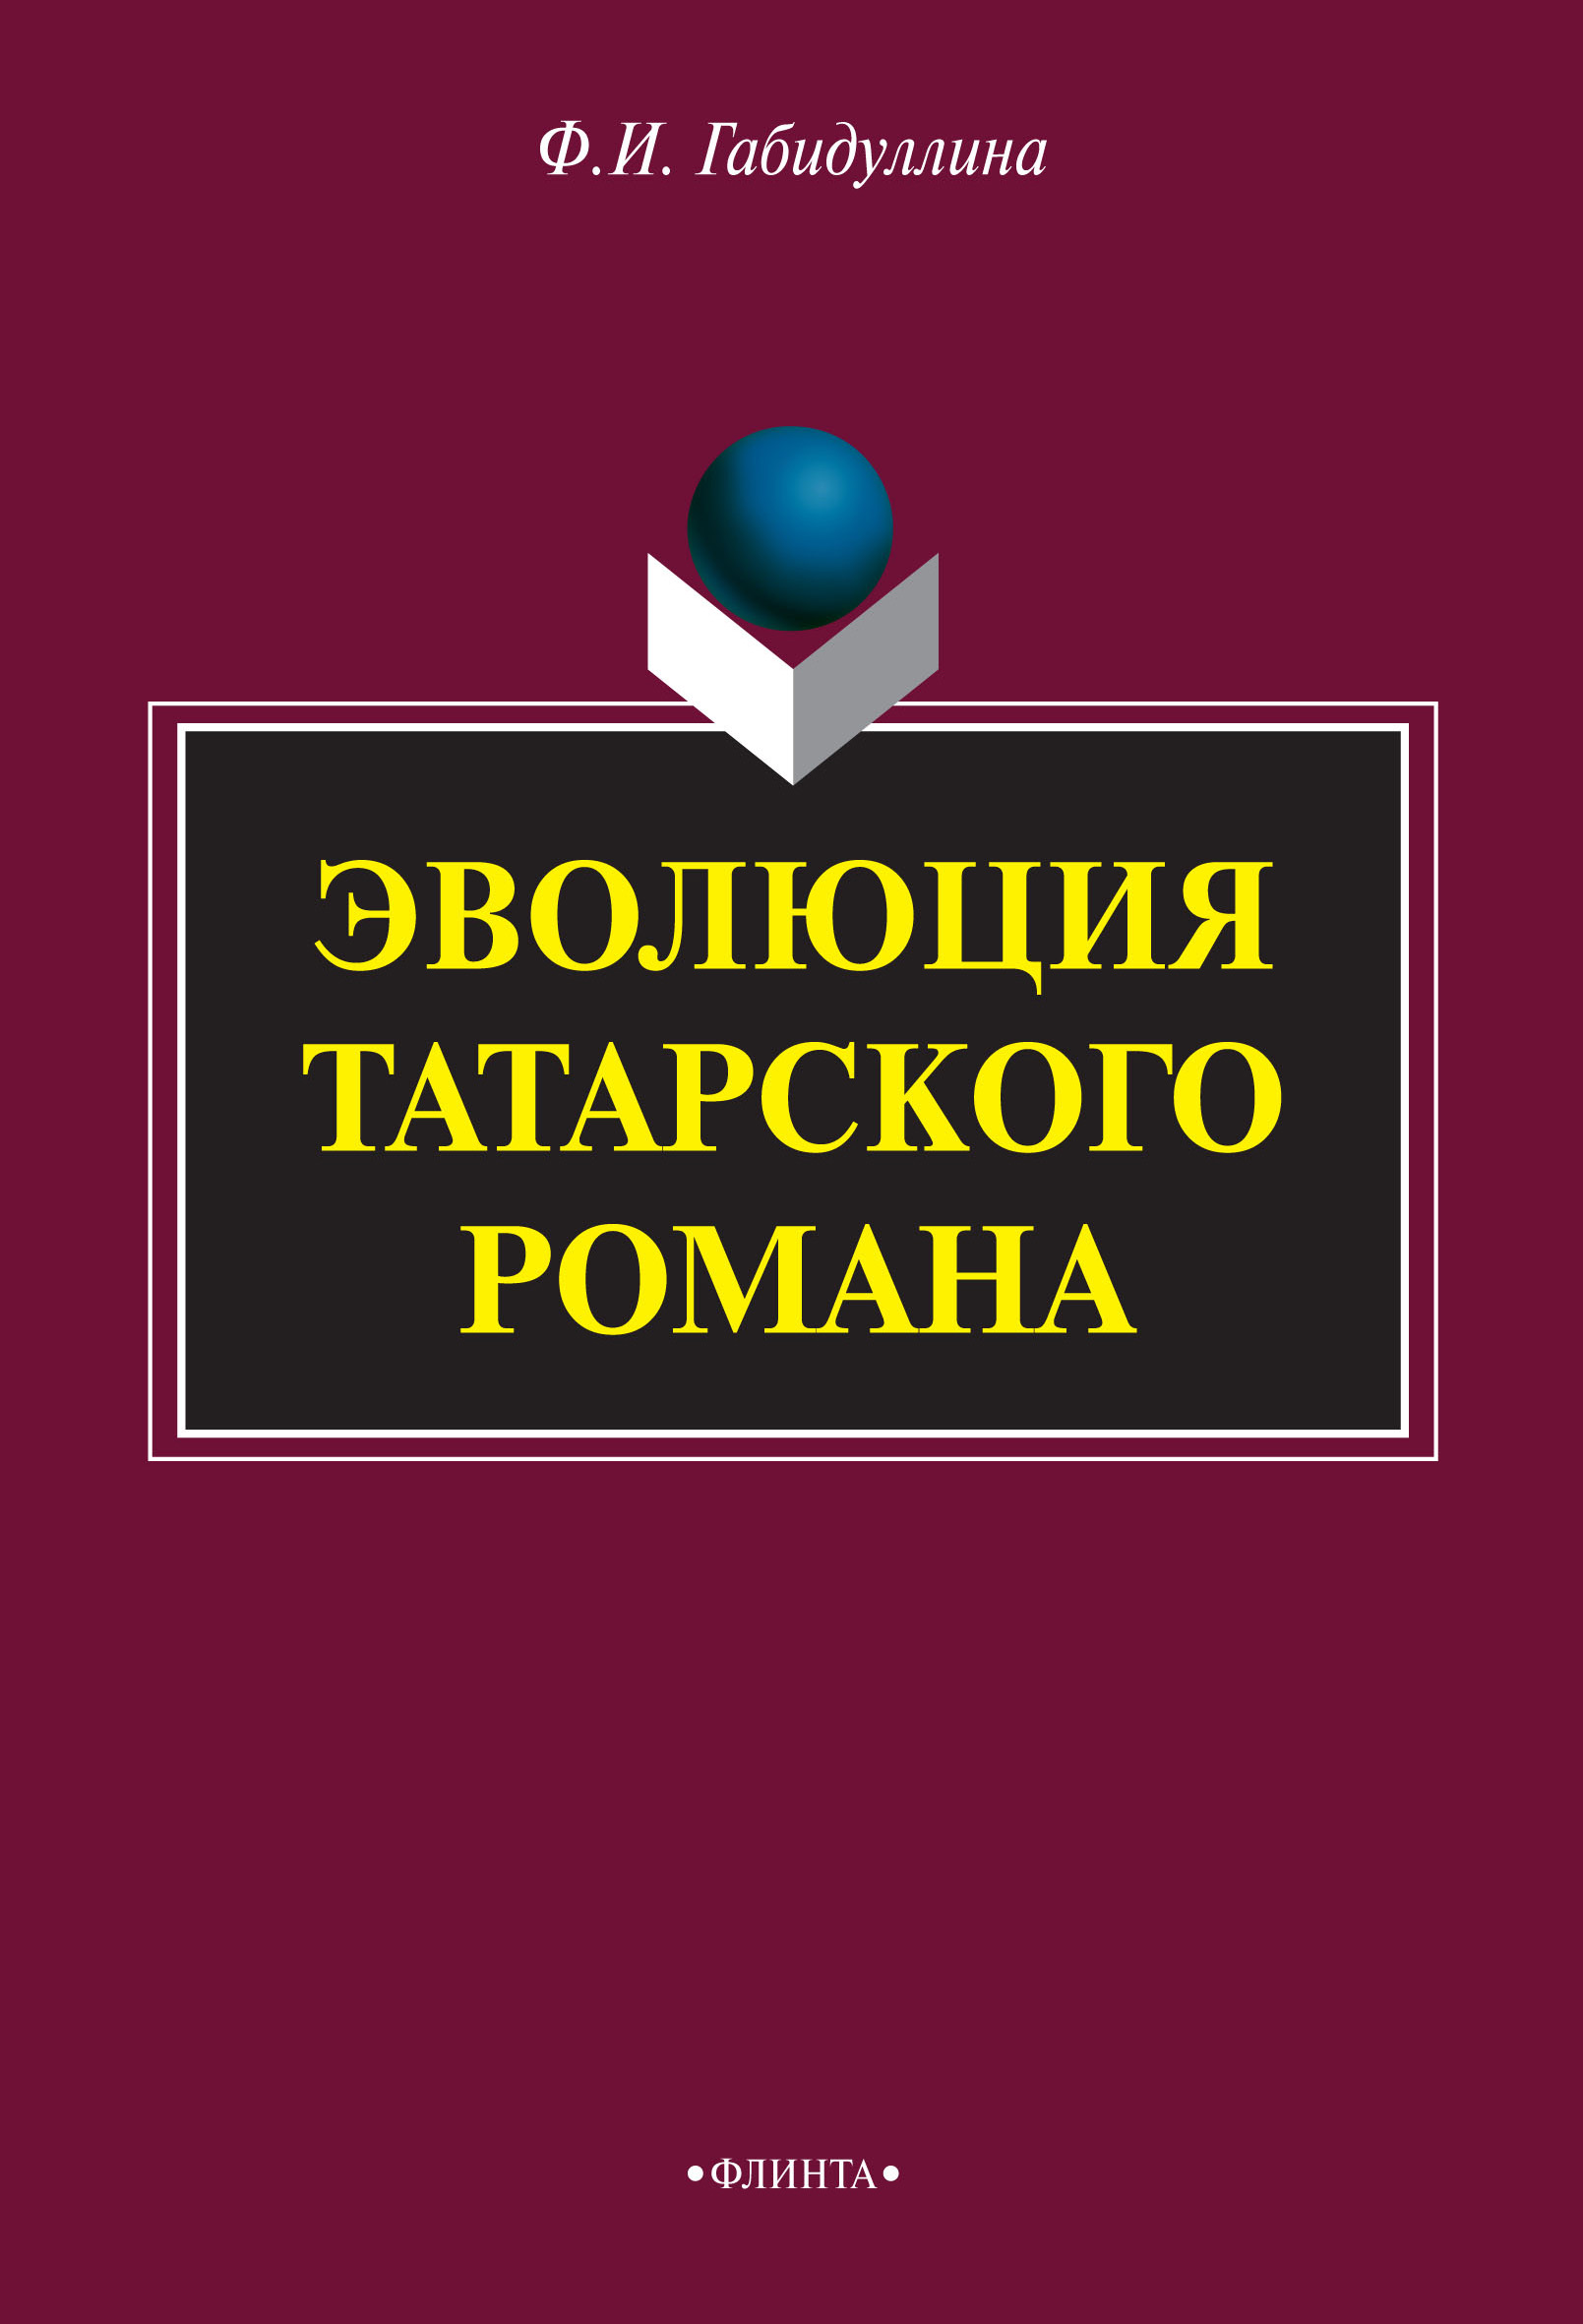 обложка электронной книги Эволюция татарского романа